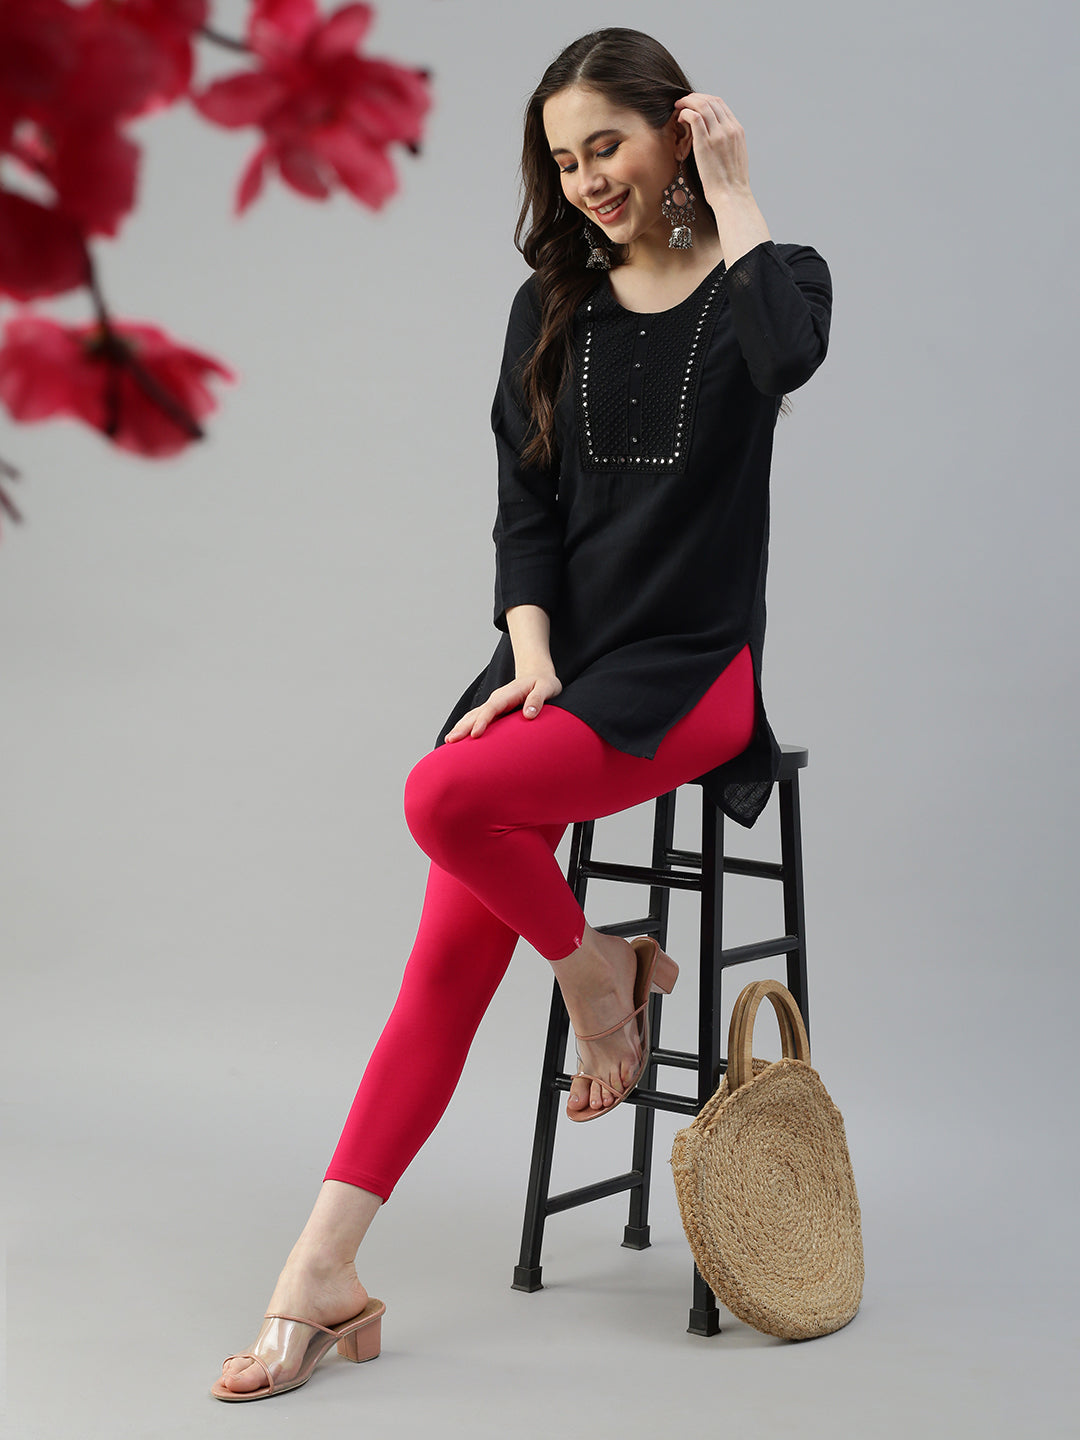 Buy Capri Leggings Online for Women & Girls | Prisma Garments